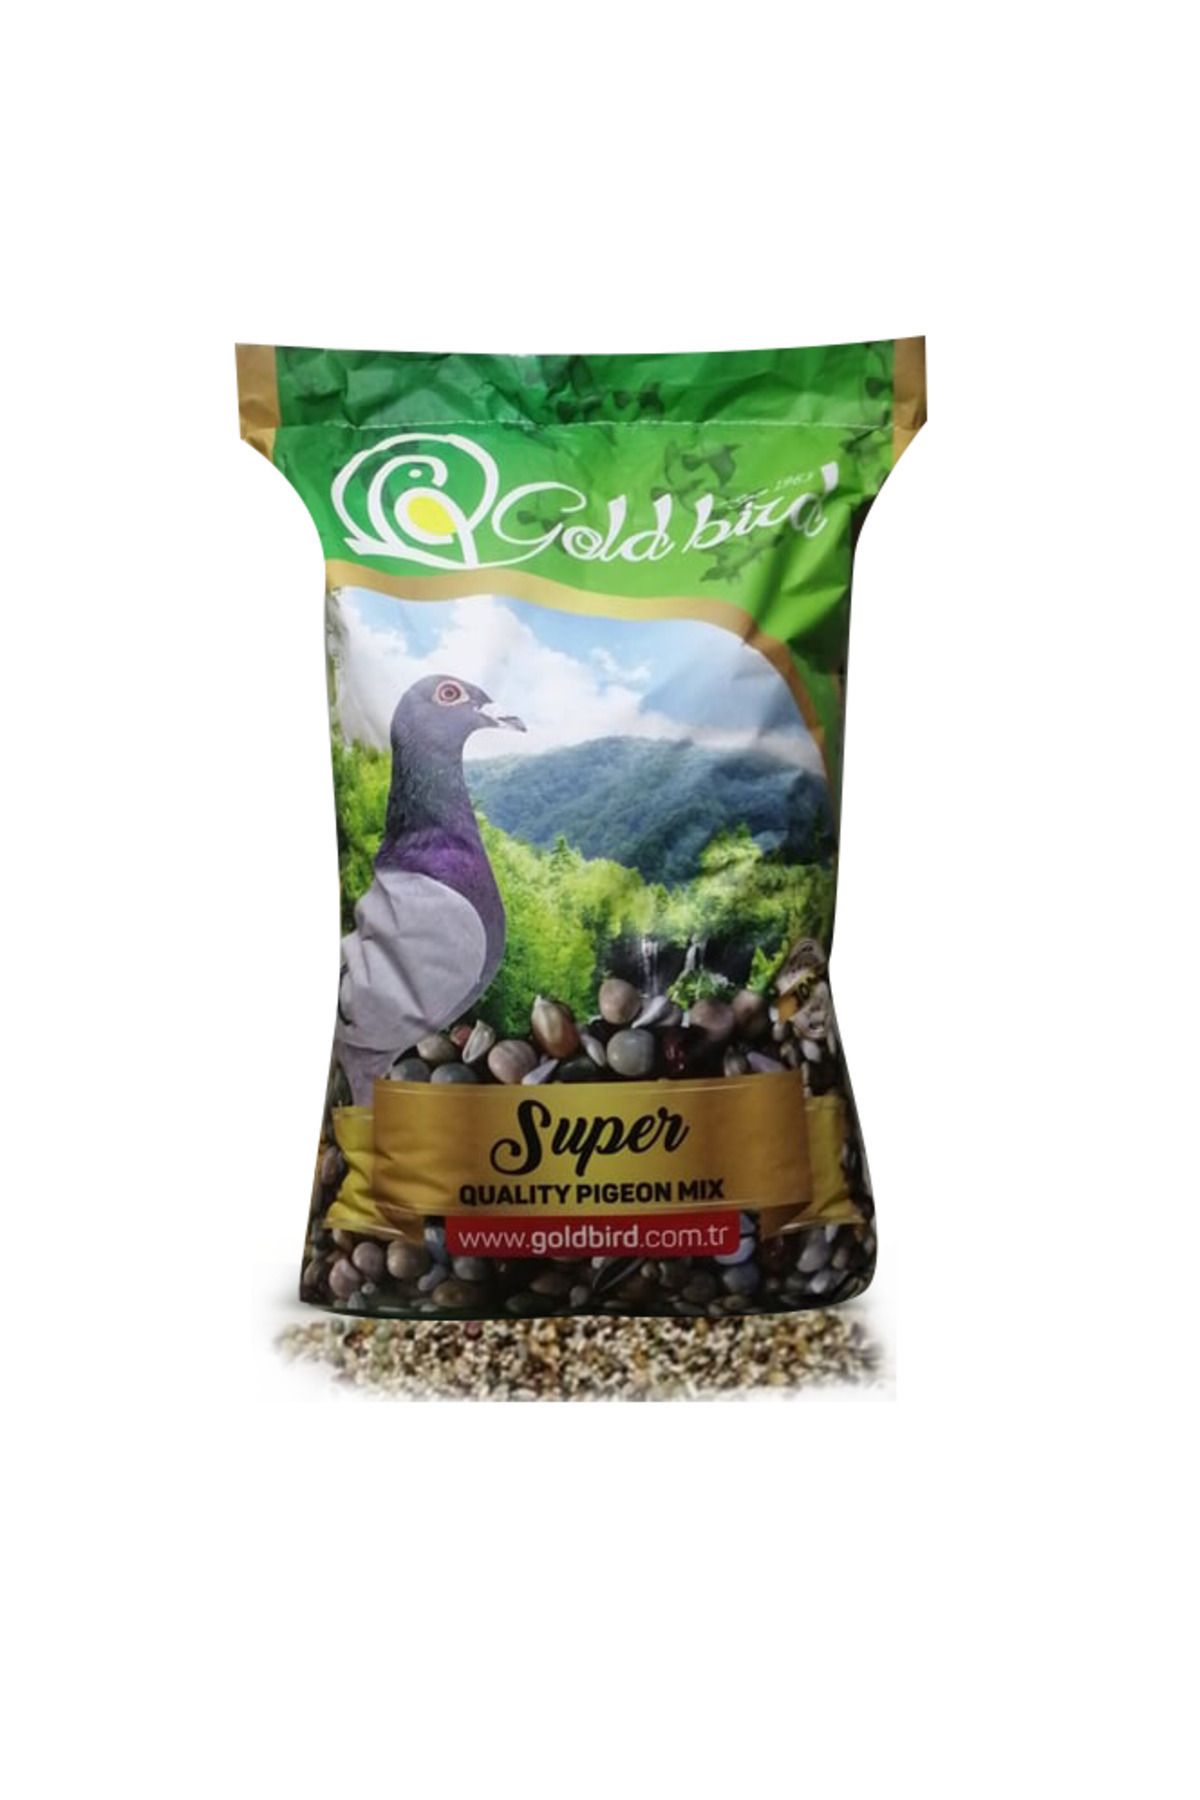 Fauna Pet Supplies 10kg Buğdaysız Tozsuz Lüx Gold Bird Güvercin Yemi Süper Karışık Yem (2 KG PAKETLERDE)